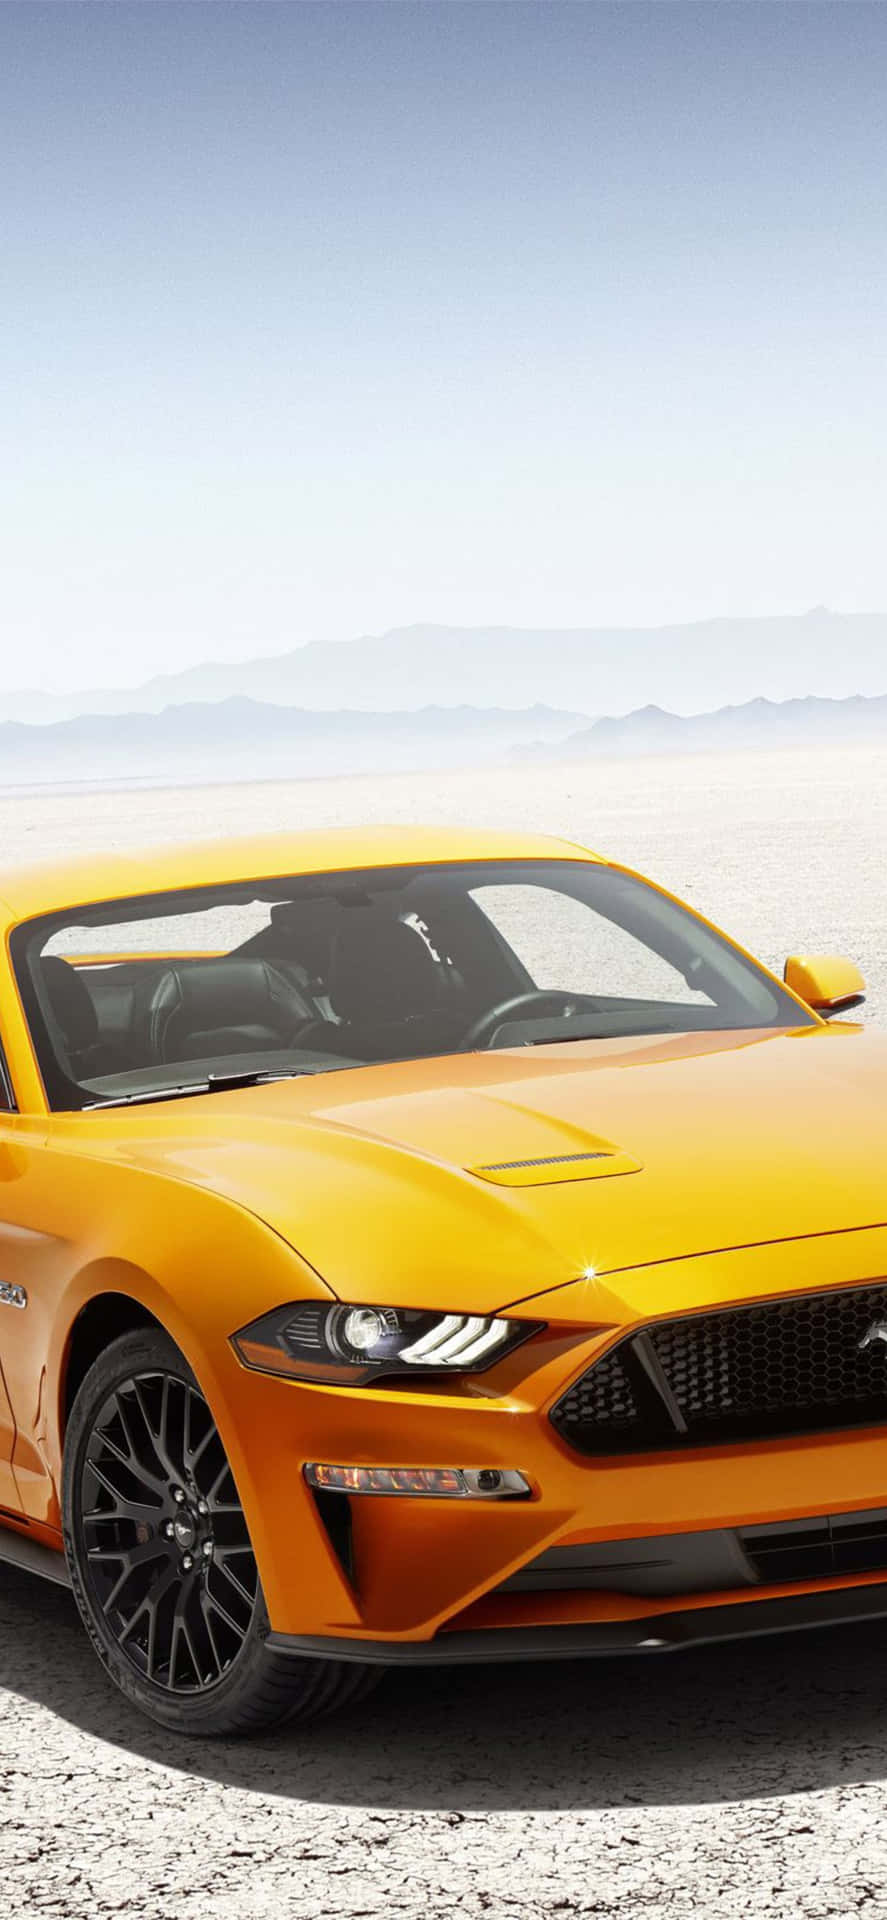 Der2019 Ford Mustang Gt Wird In Der Wüste Gezeigt. Wallpaper